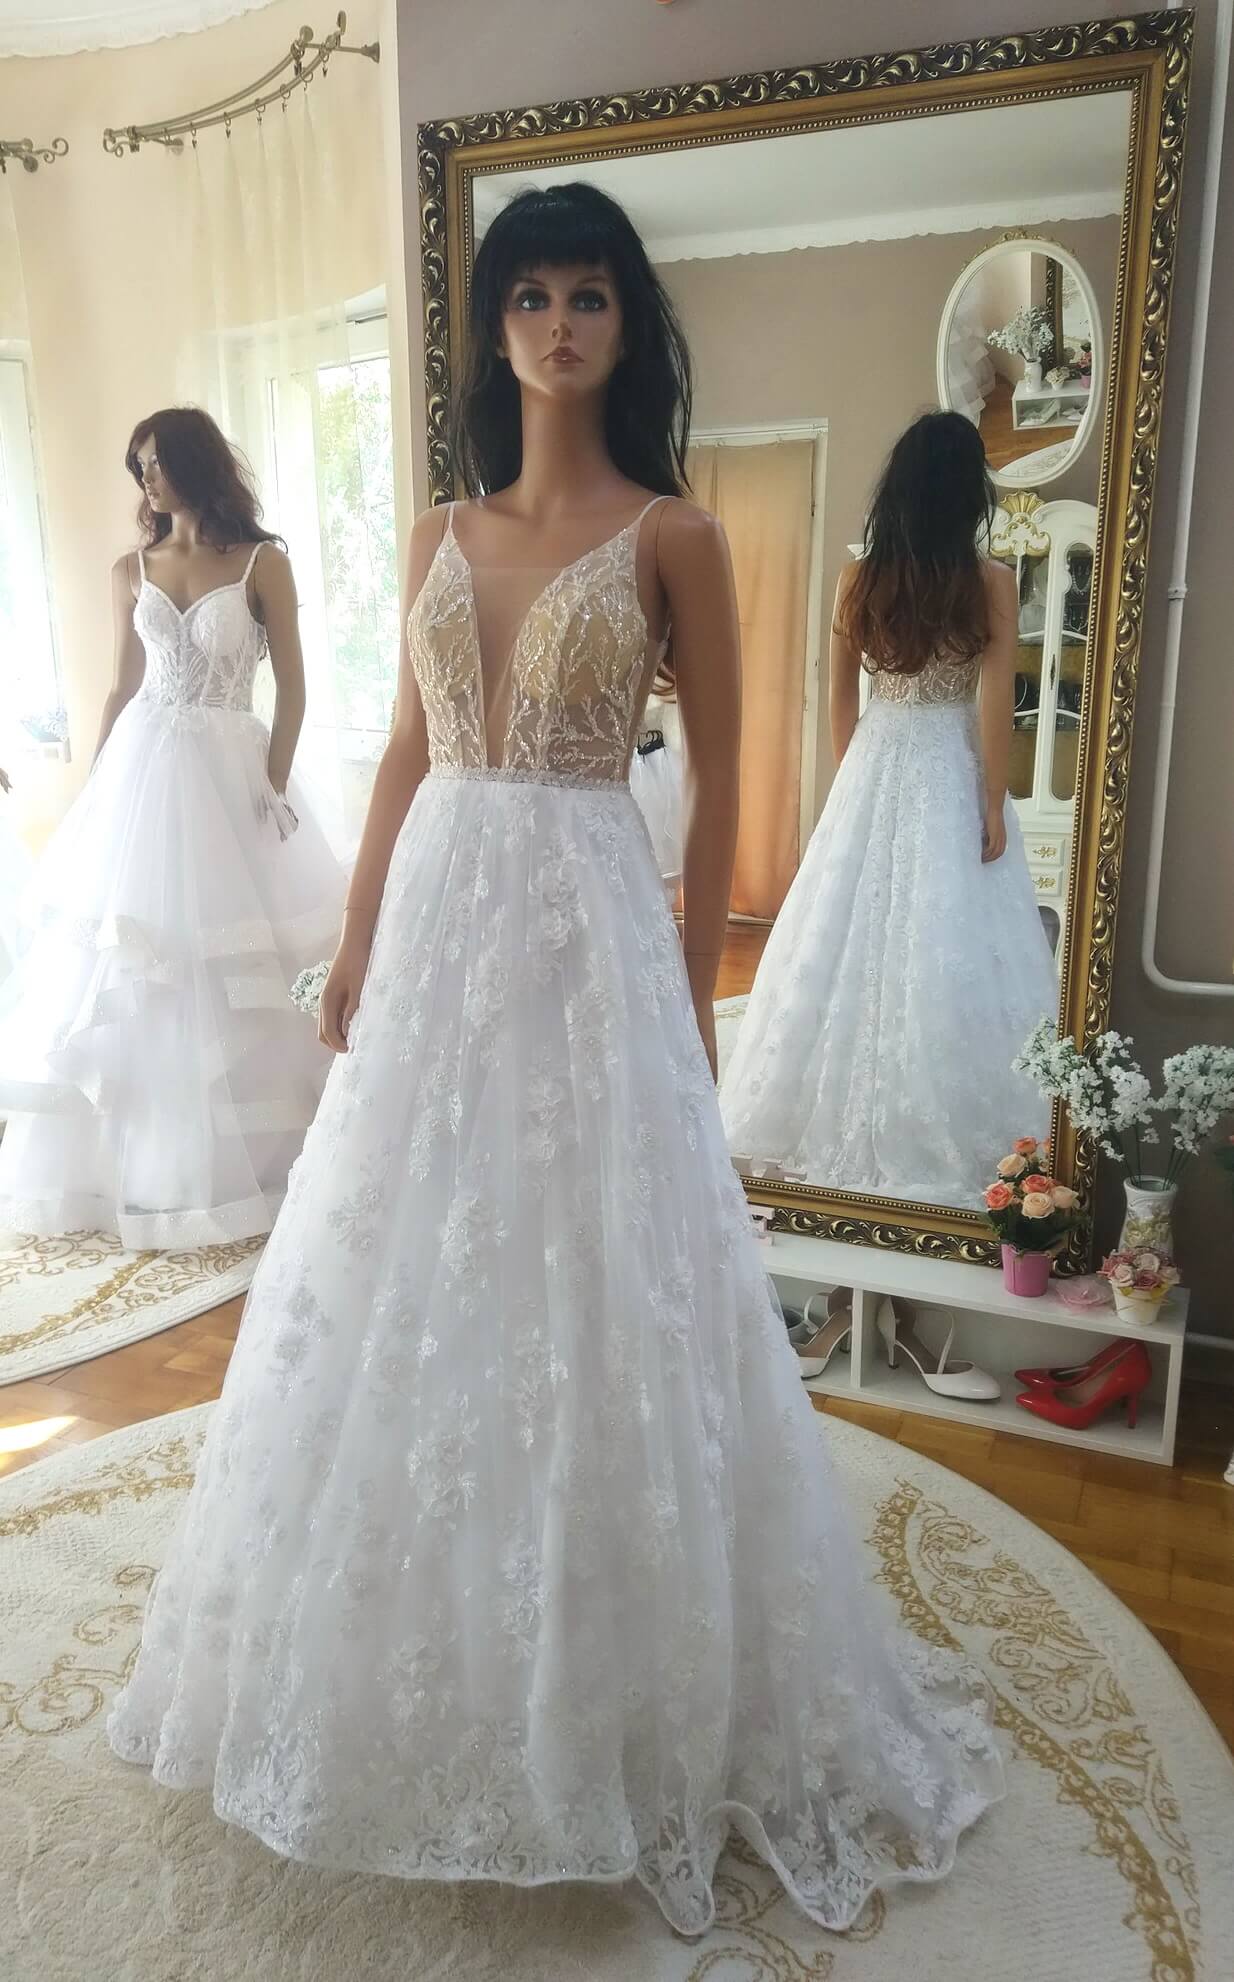 Arany csillámló felsős fehér csipke menyasszonyi ruha